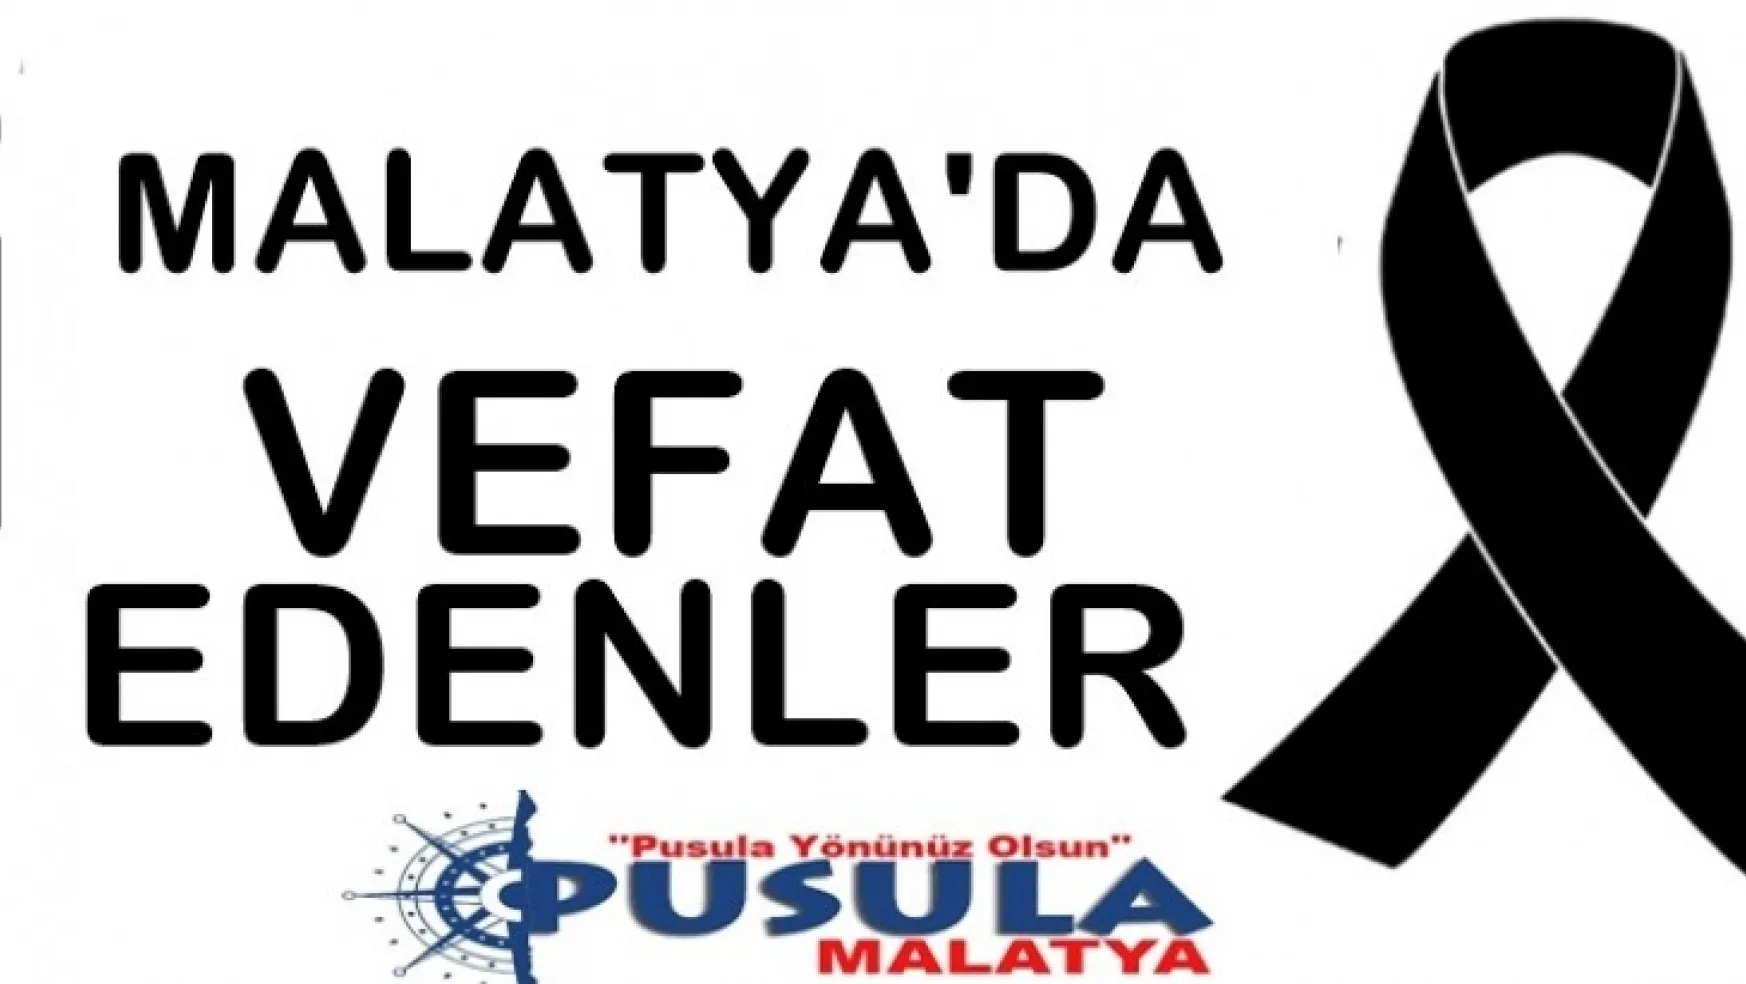 Malatya'da Bugün 14 kişi vefat etti.